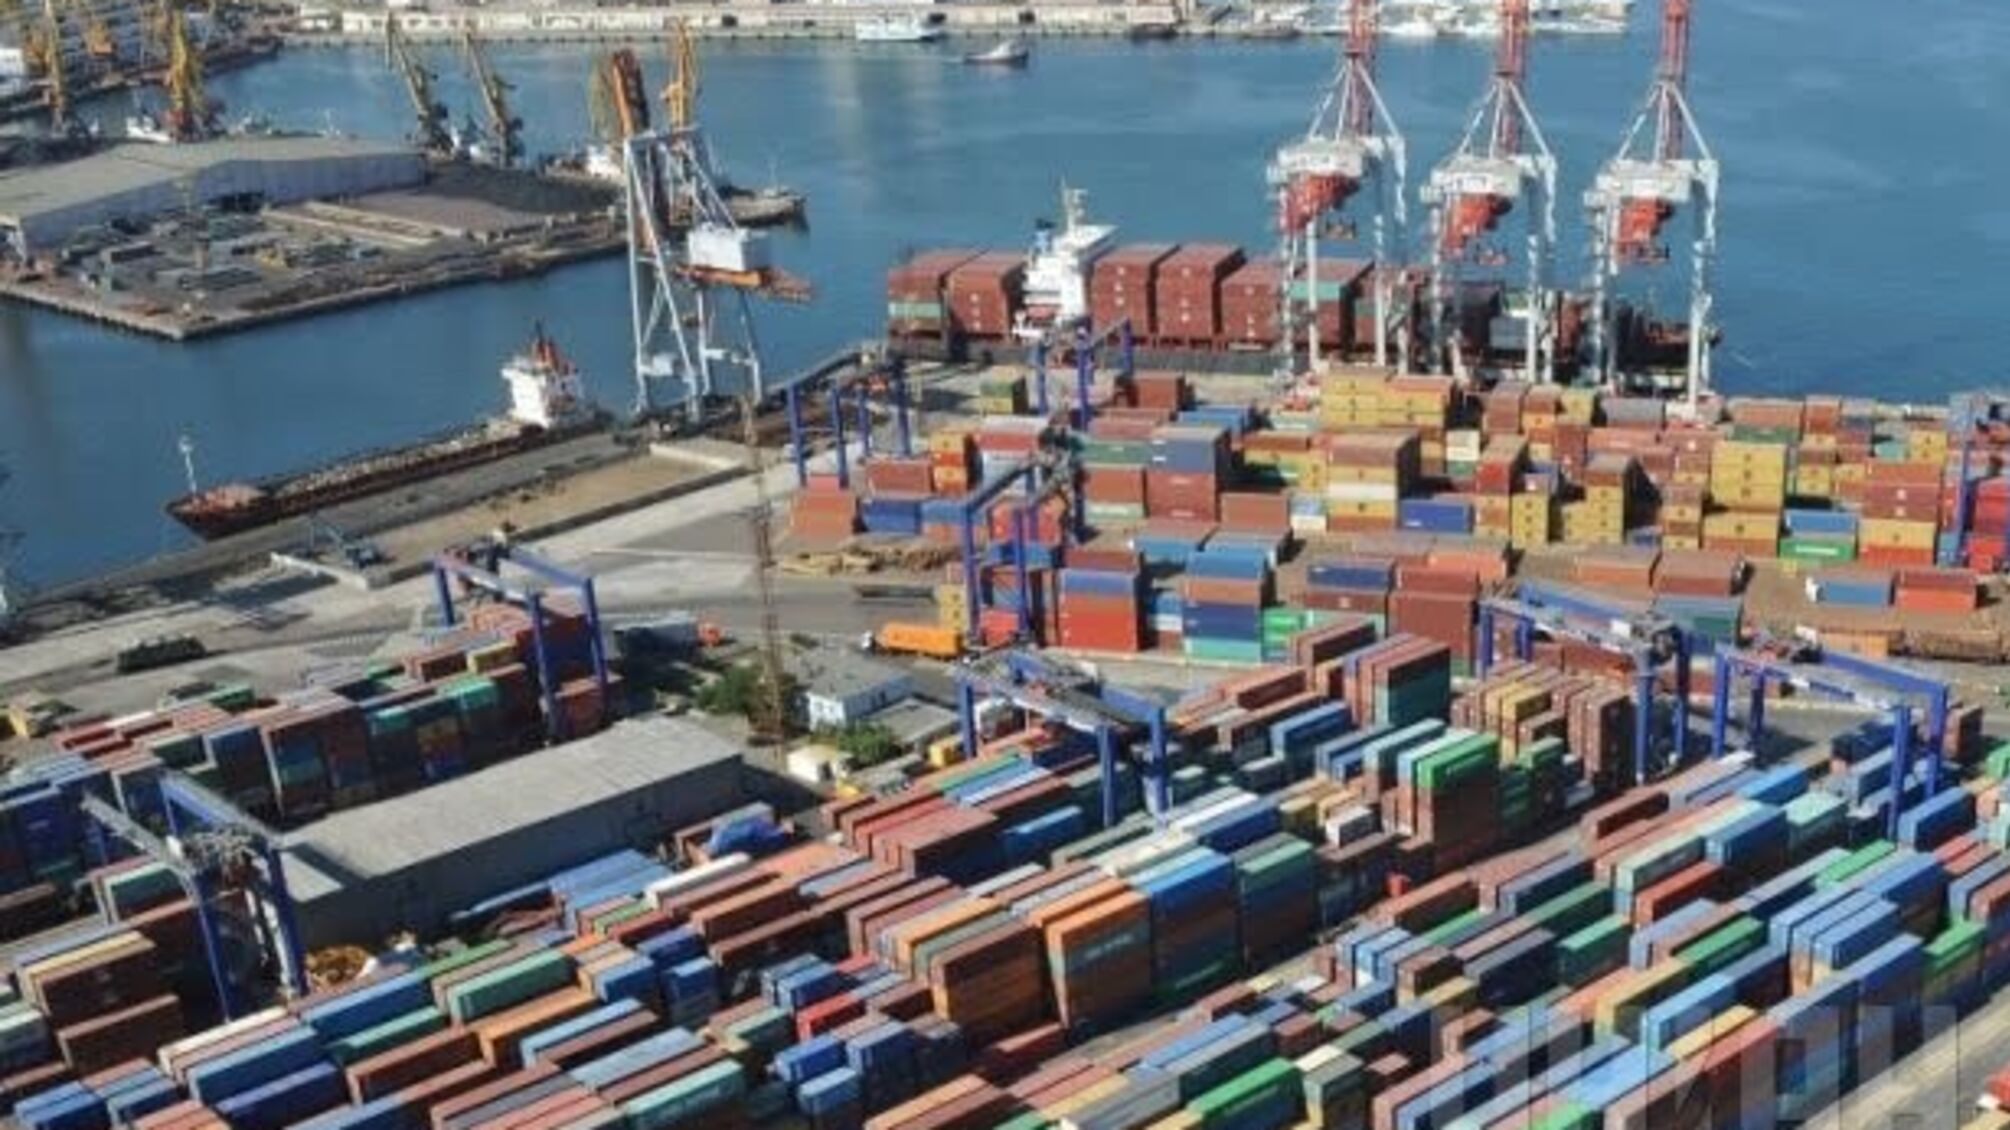 Міністерство інфраструктури України  продає активи  Одеського морського торгового порту  іноземній компанії